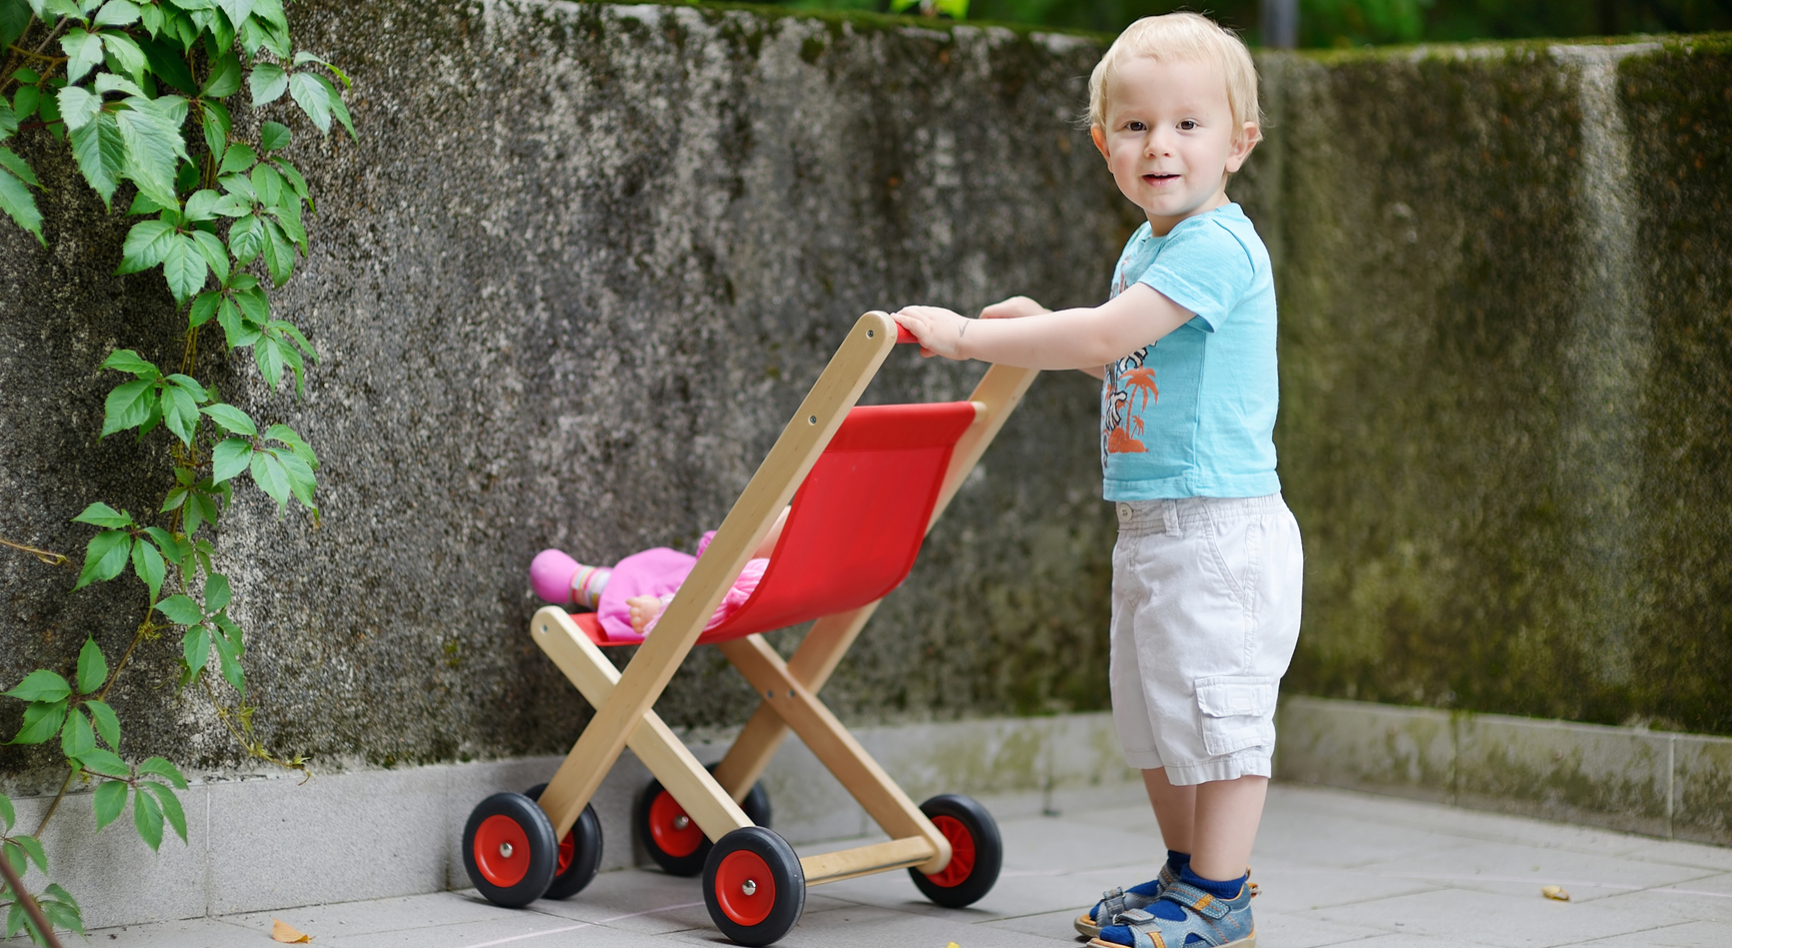 Les petits garçons préfèrent les objets sociaux, comme les poupées, aux jouets non sociaux, comme les voitures. ©&nbsp;MNStudio, Shutterstock